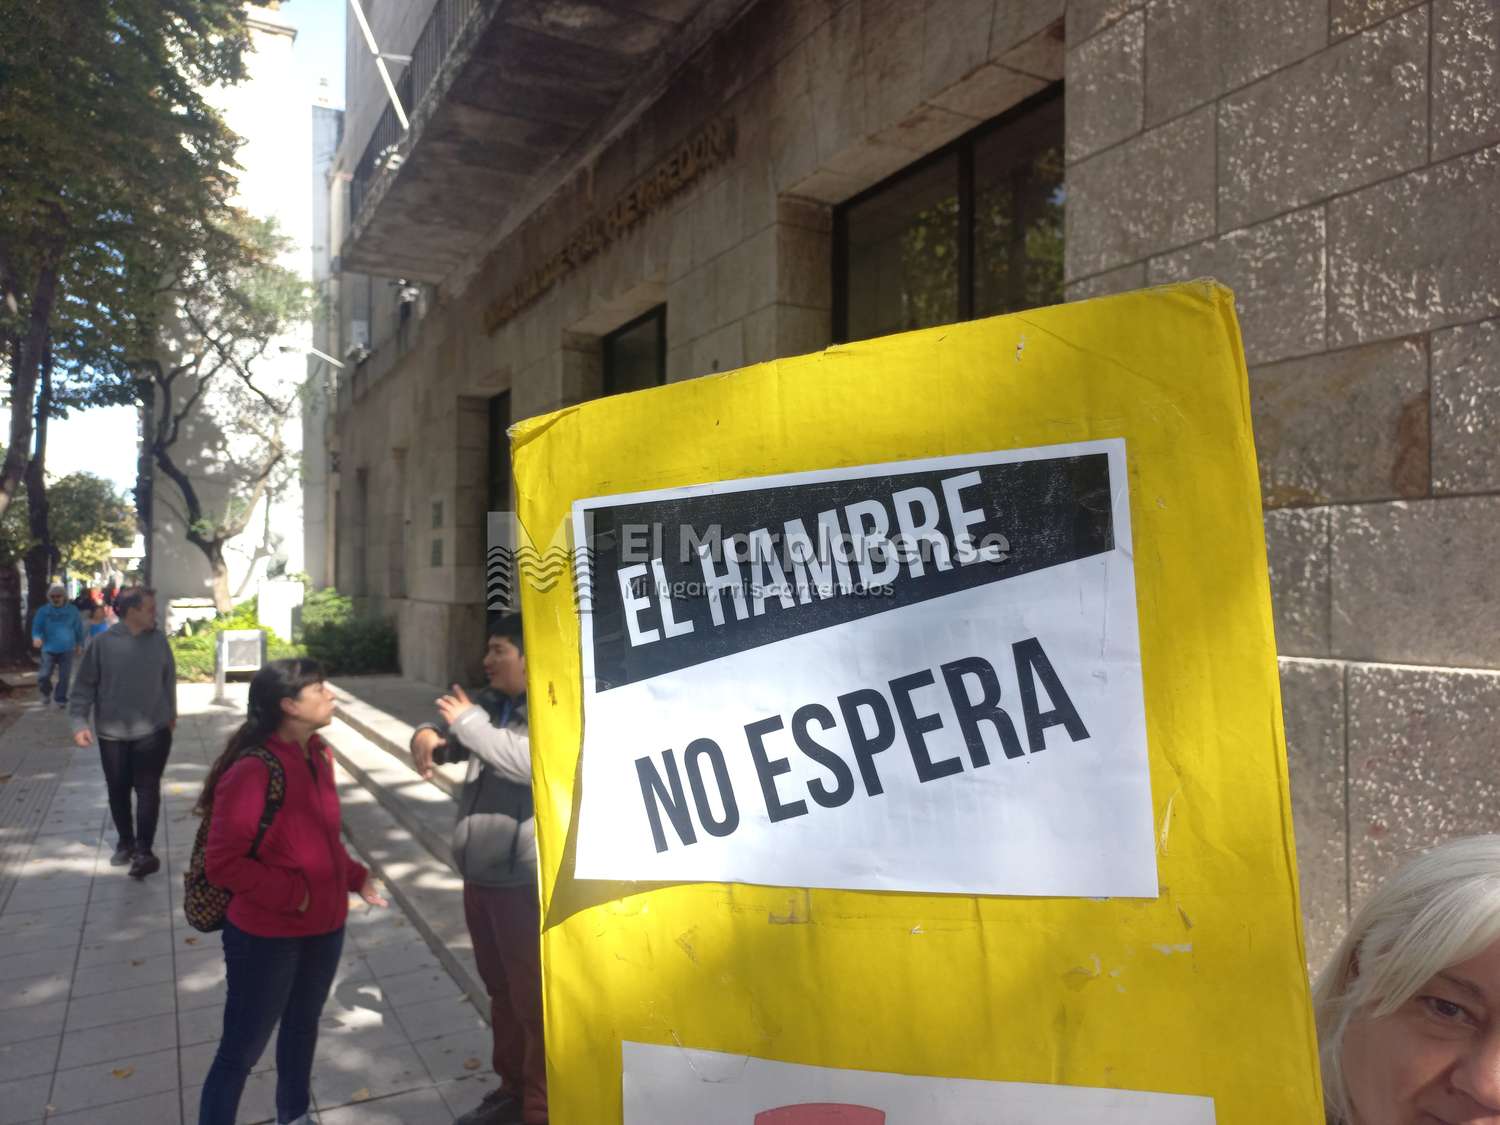 Referentes barriales entregaron un petitorio al Municipio: "La realidad de la periferia es desesperante"